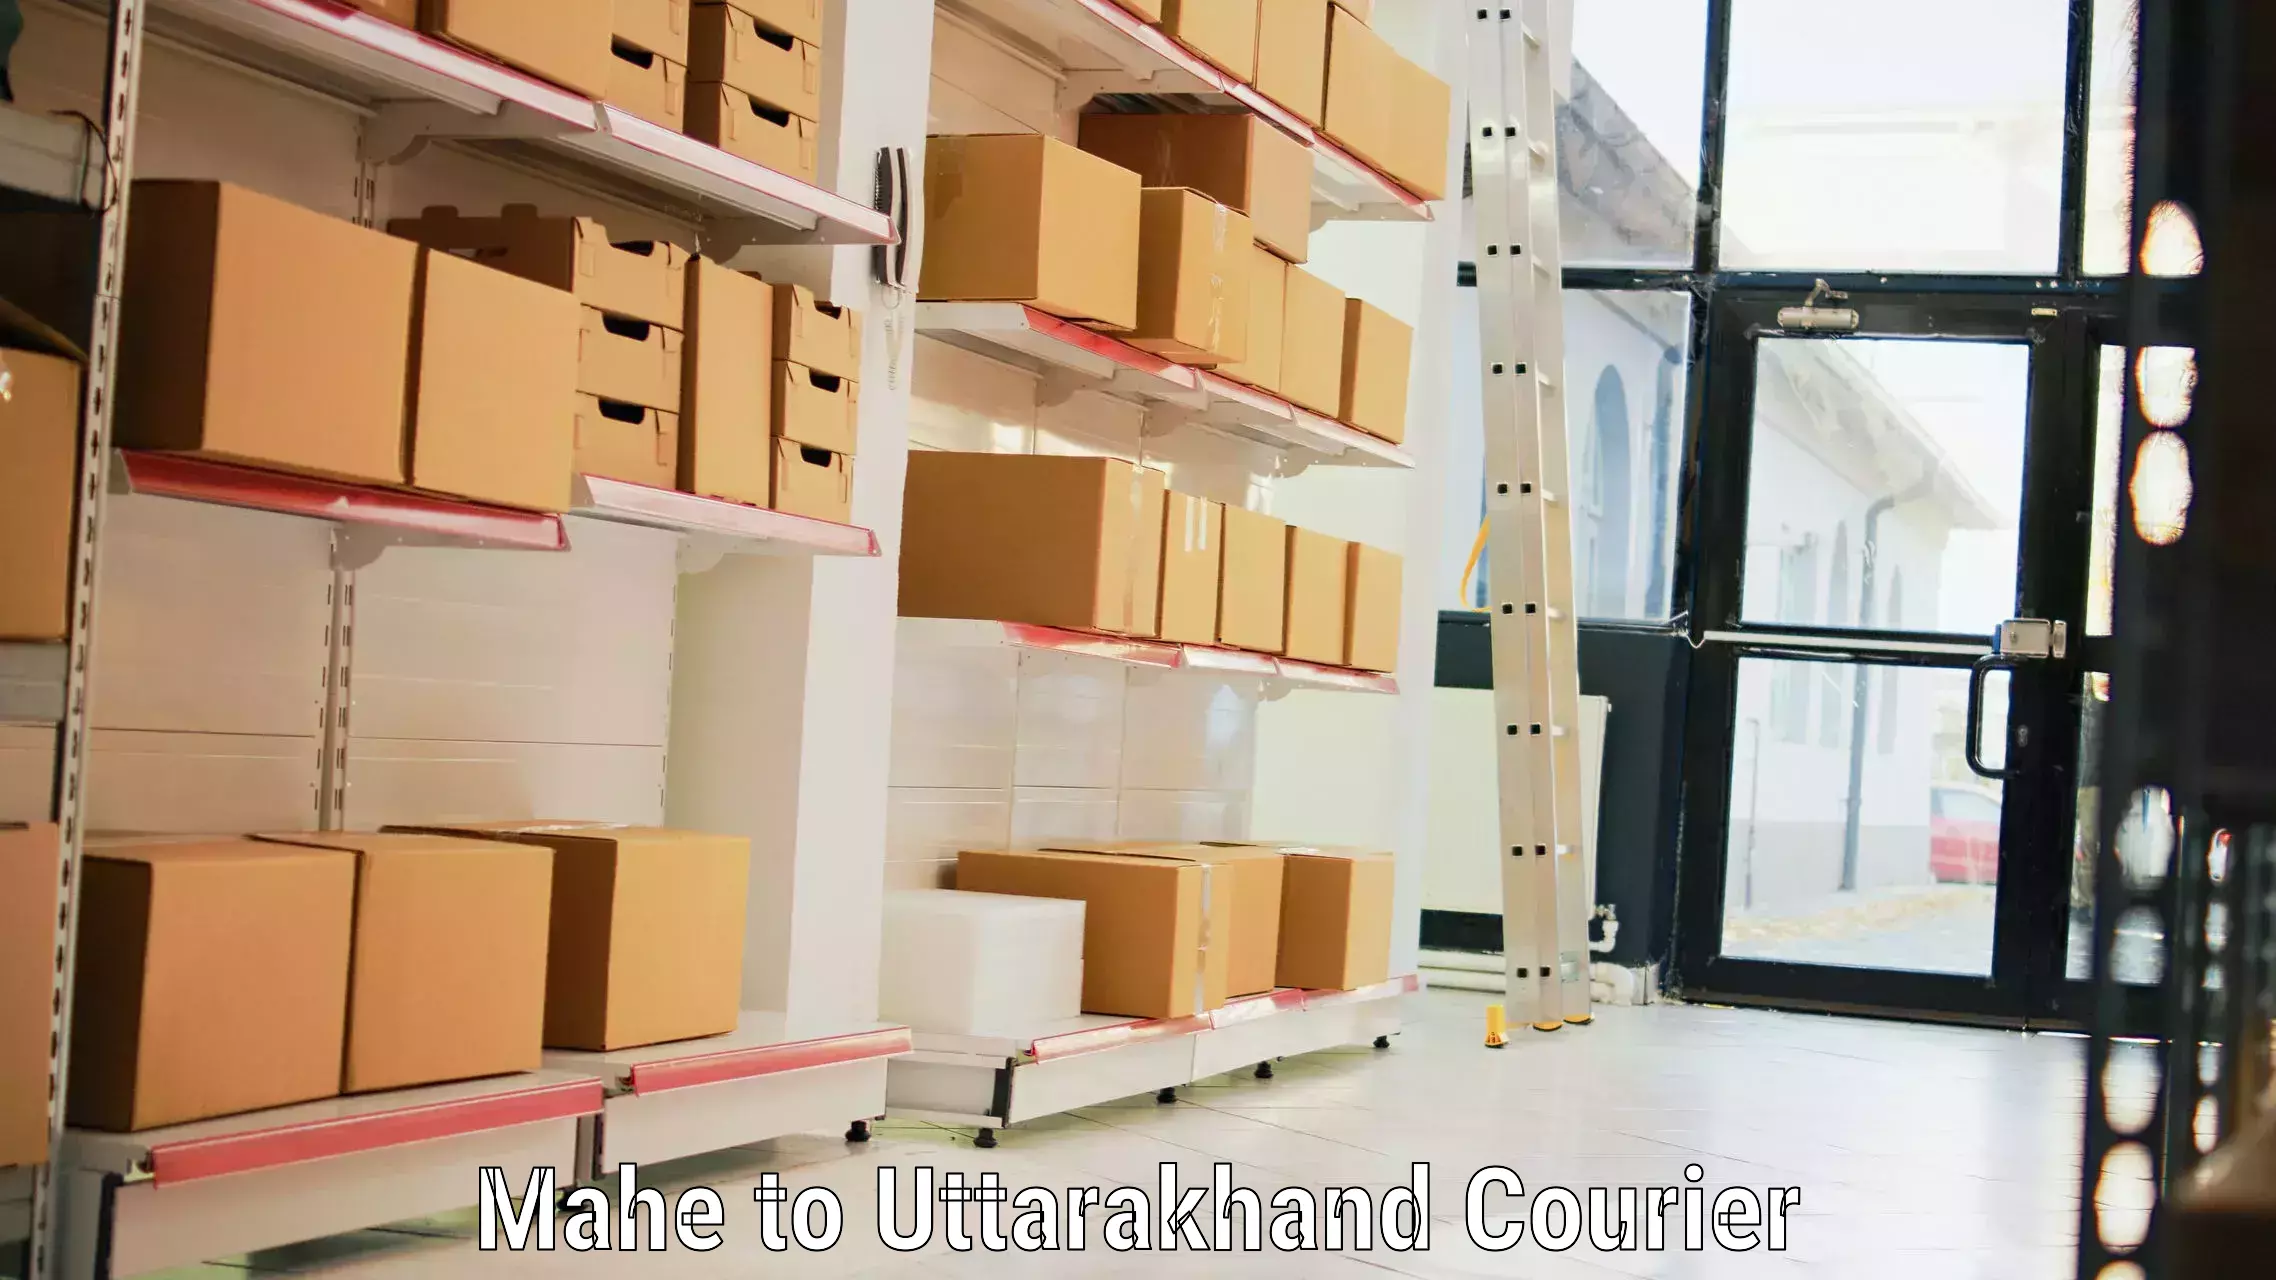 Luggage transport consultancy Mahe to Uttarakhand